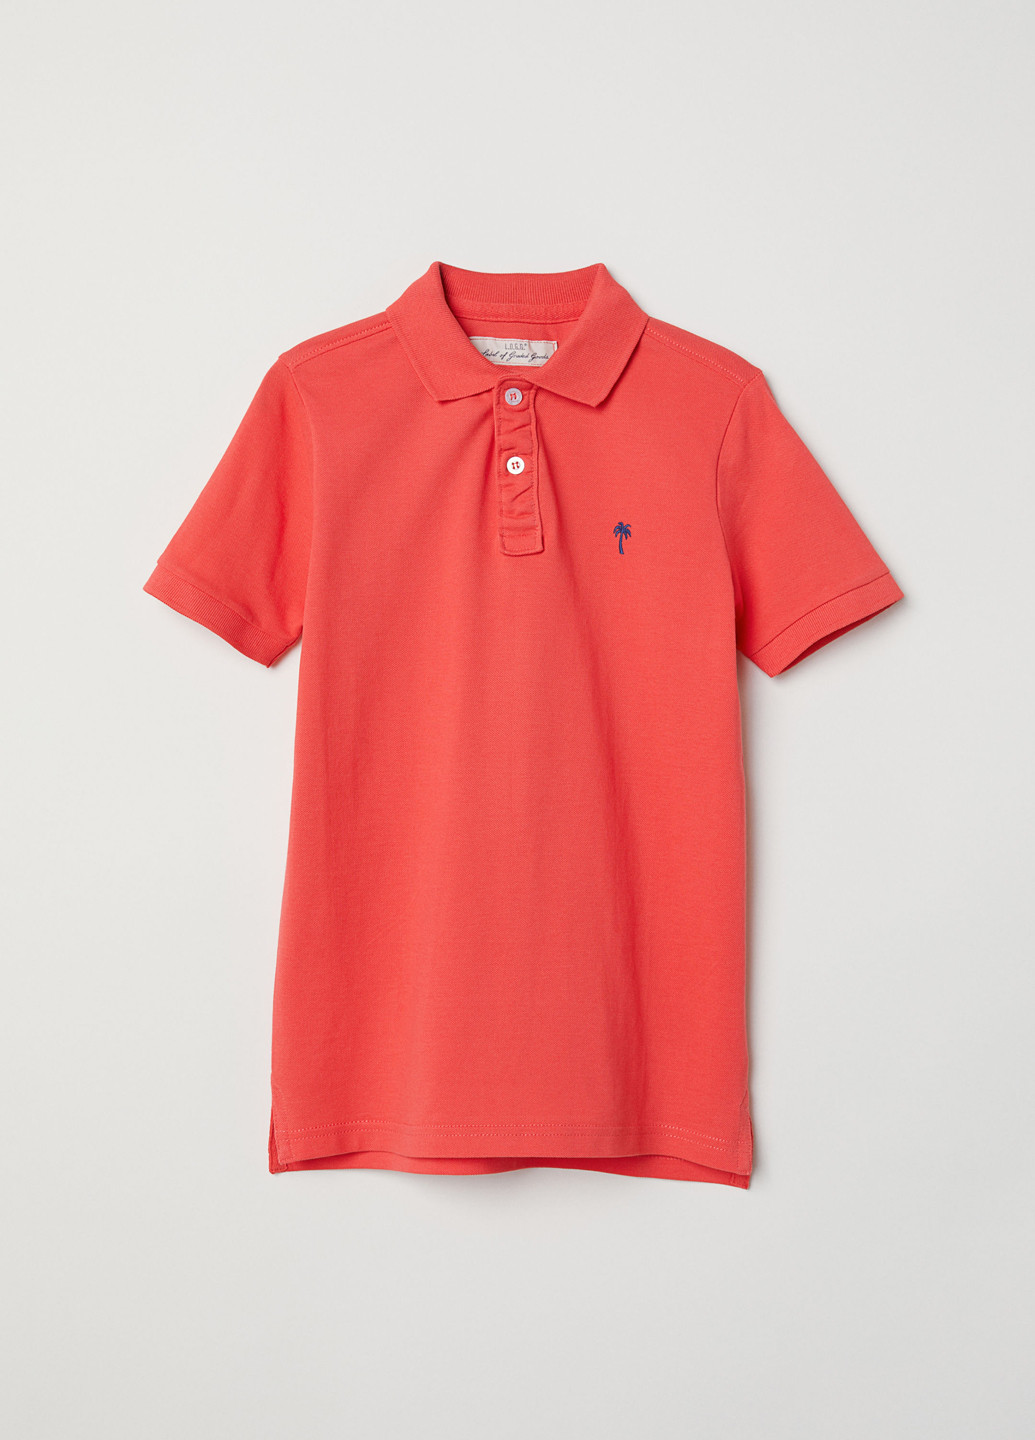 Красная детская футболка-футболка для мальчика H&M